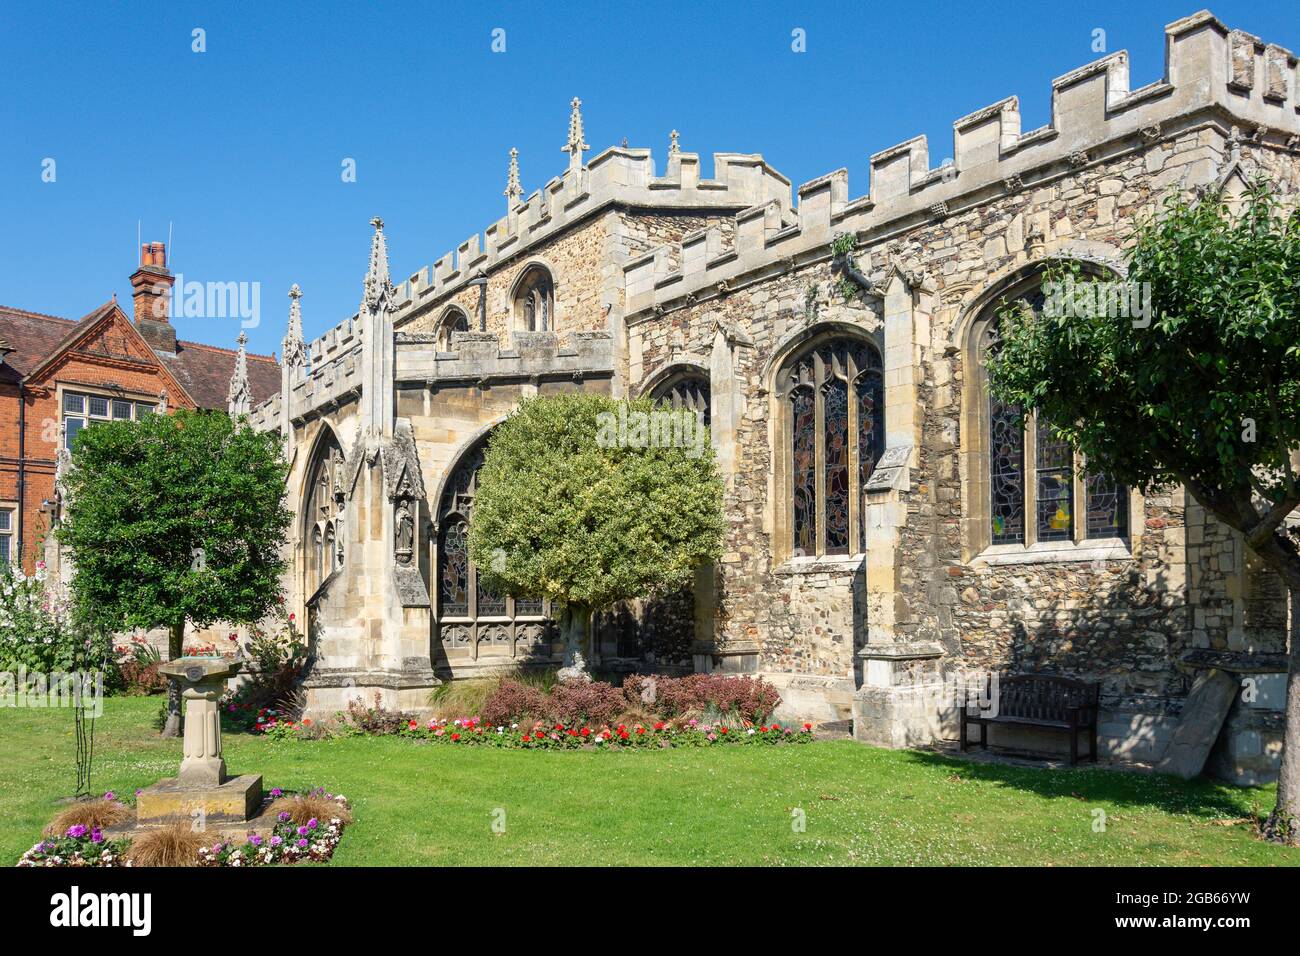 All Saints' Church, de la place du marché, Huntingdon, Cambridgeshire, Angleterre, Royaume-Uni Banque D'Images